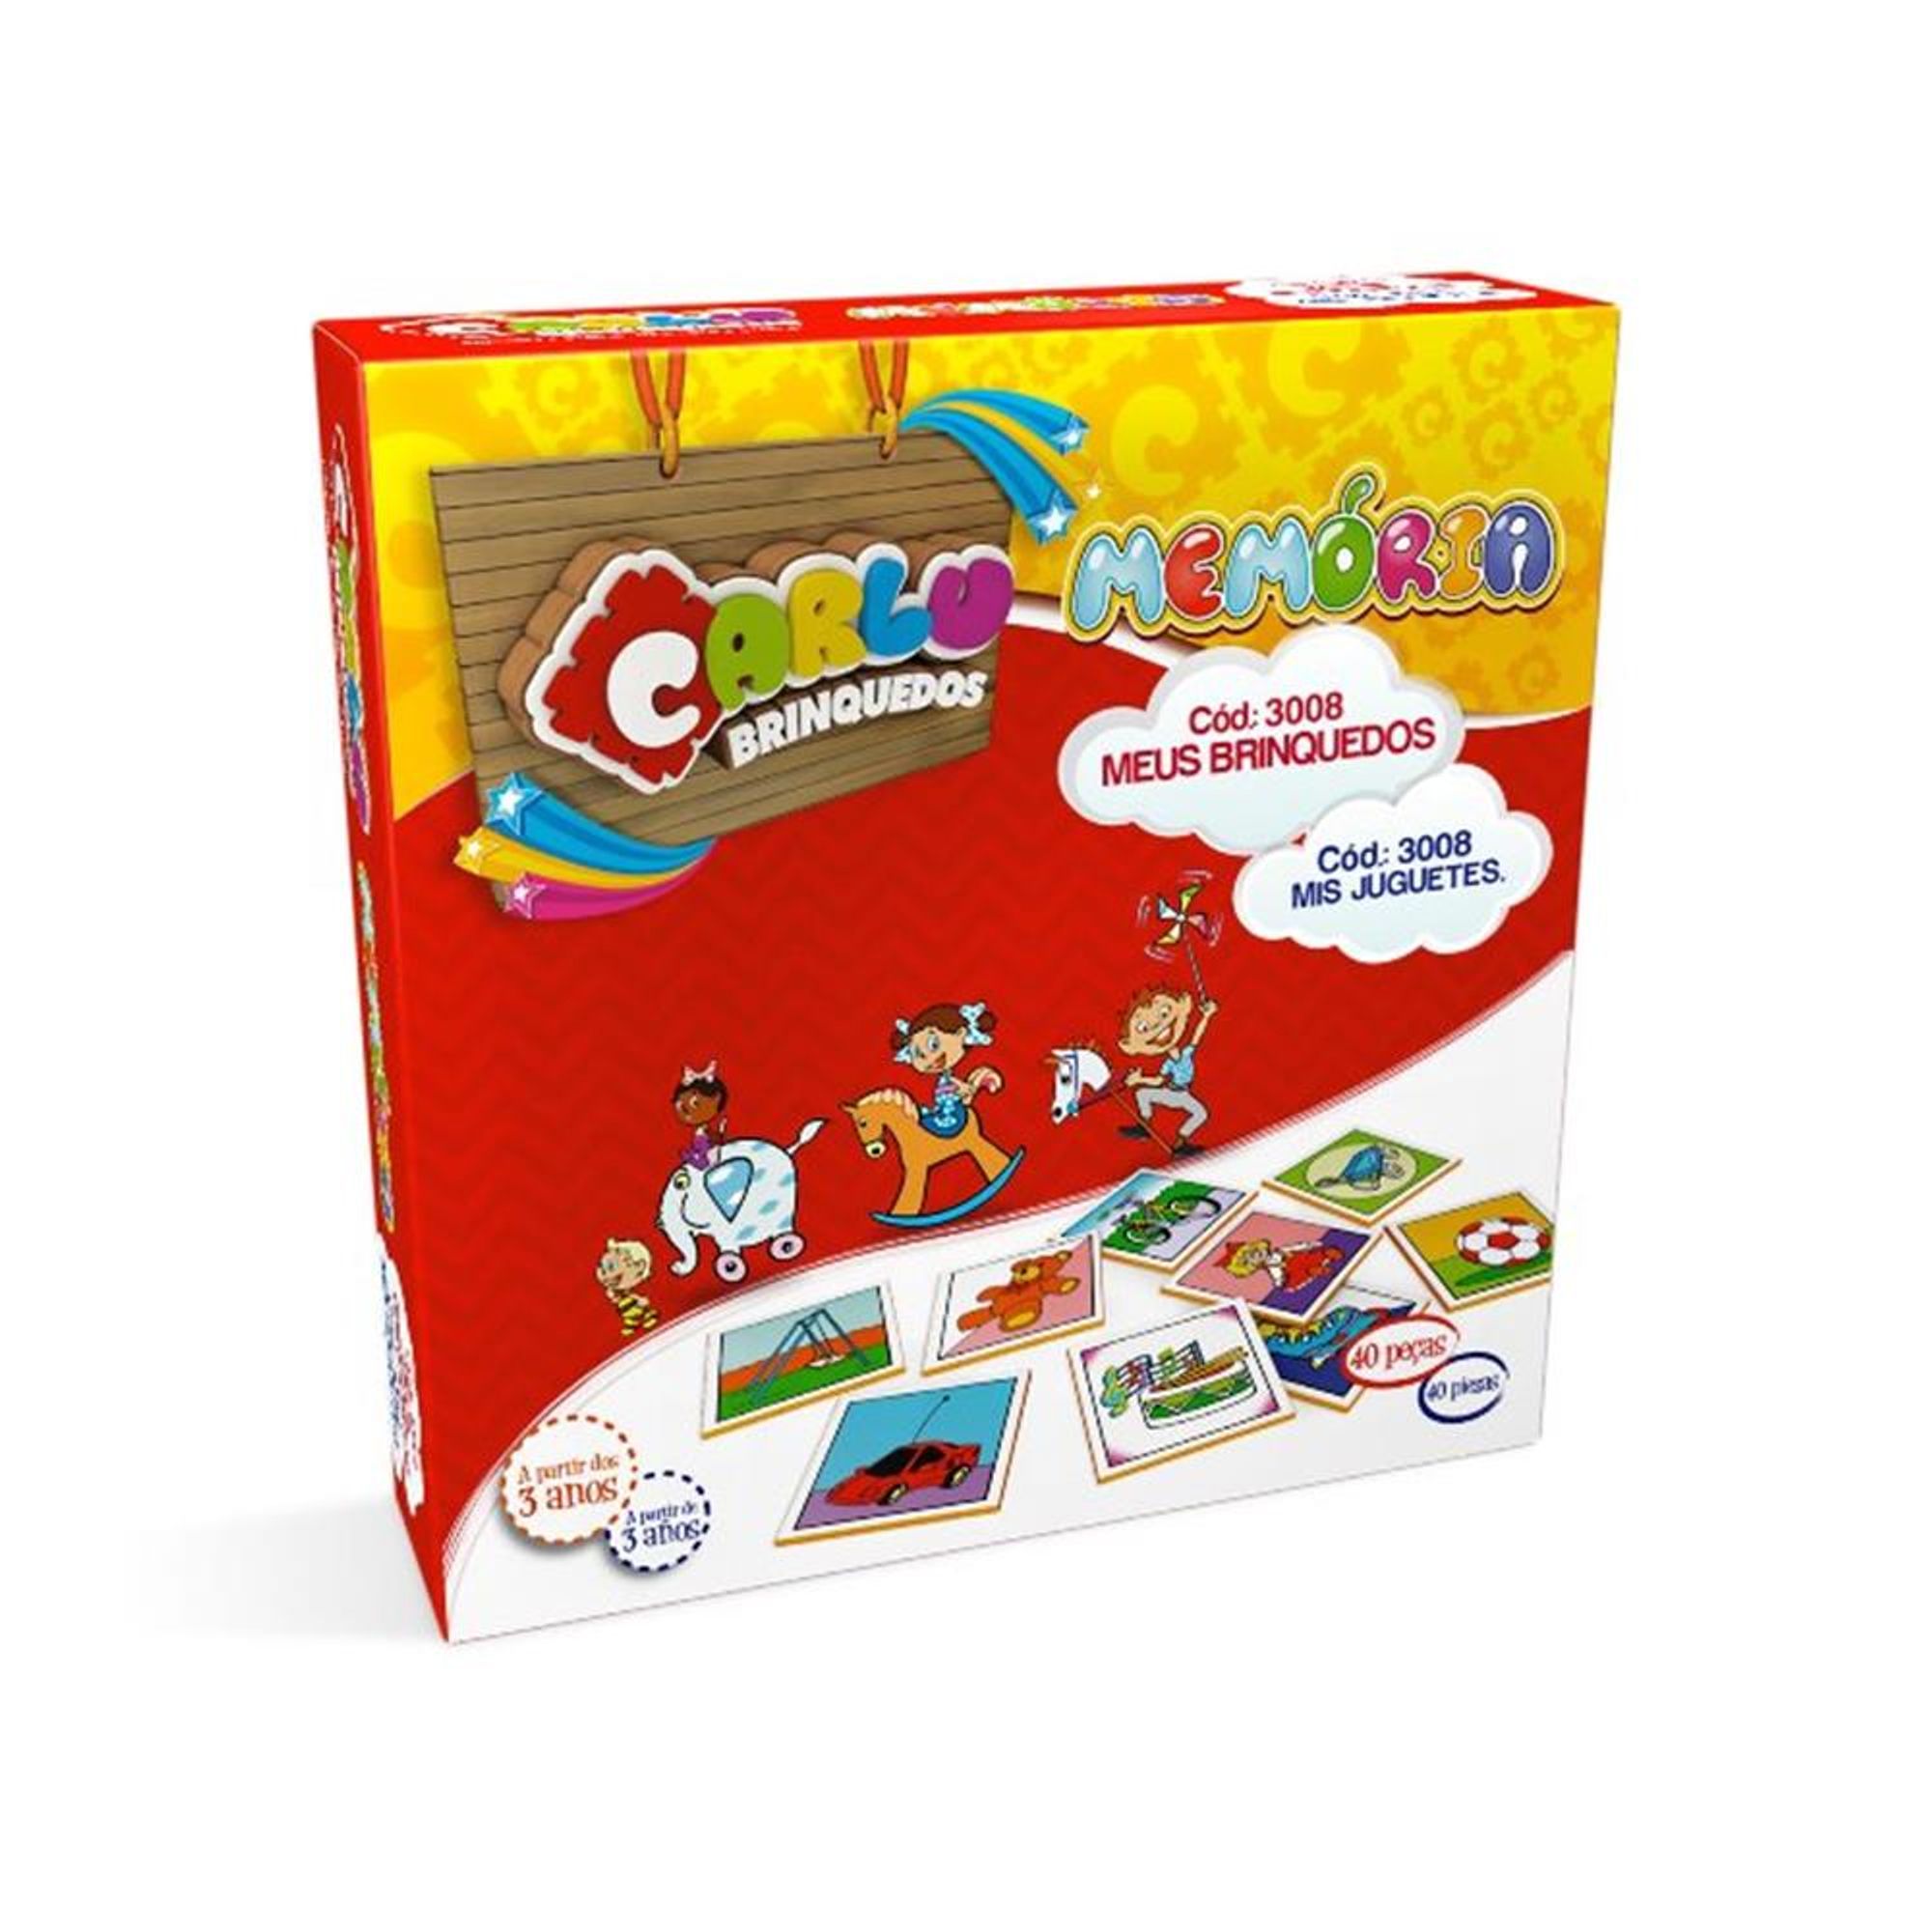 Carlu Brinquedos - Jogo Educativo, 4+ Anos, 150 Peças, Color Multicolorido,  1120